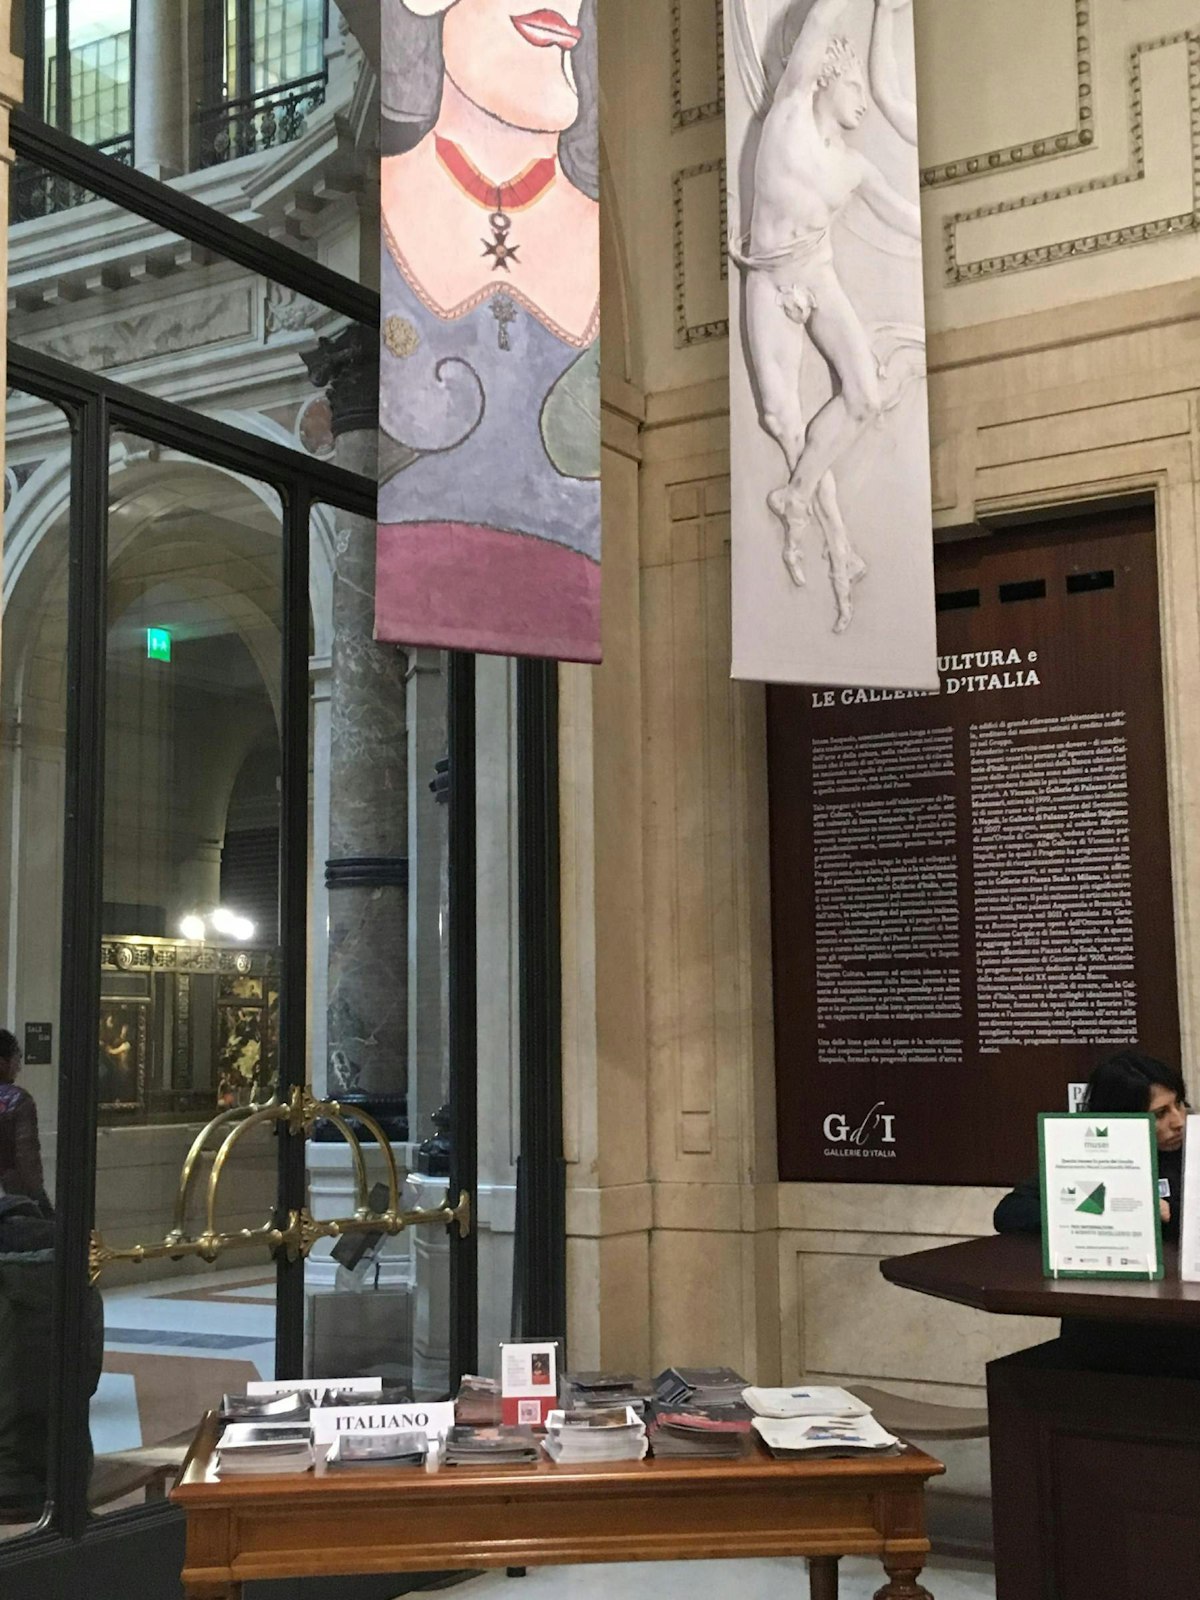 Inside the Galleria d’Italia